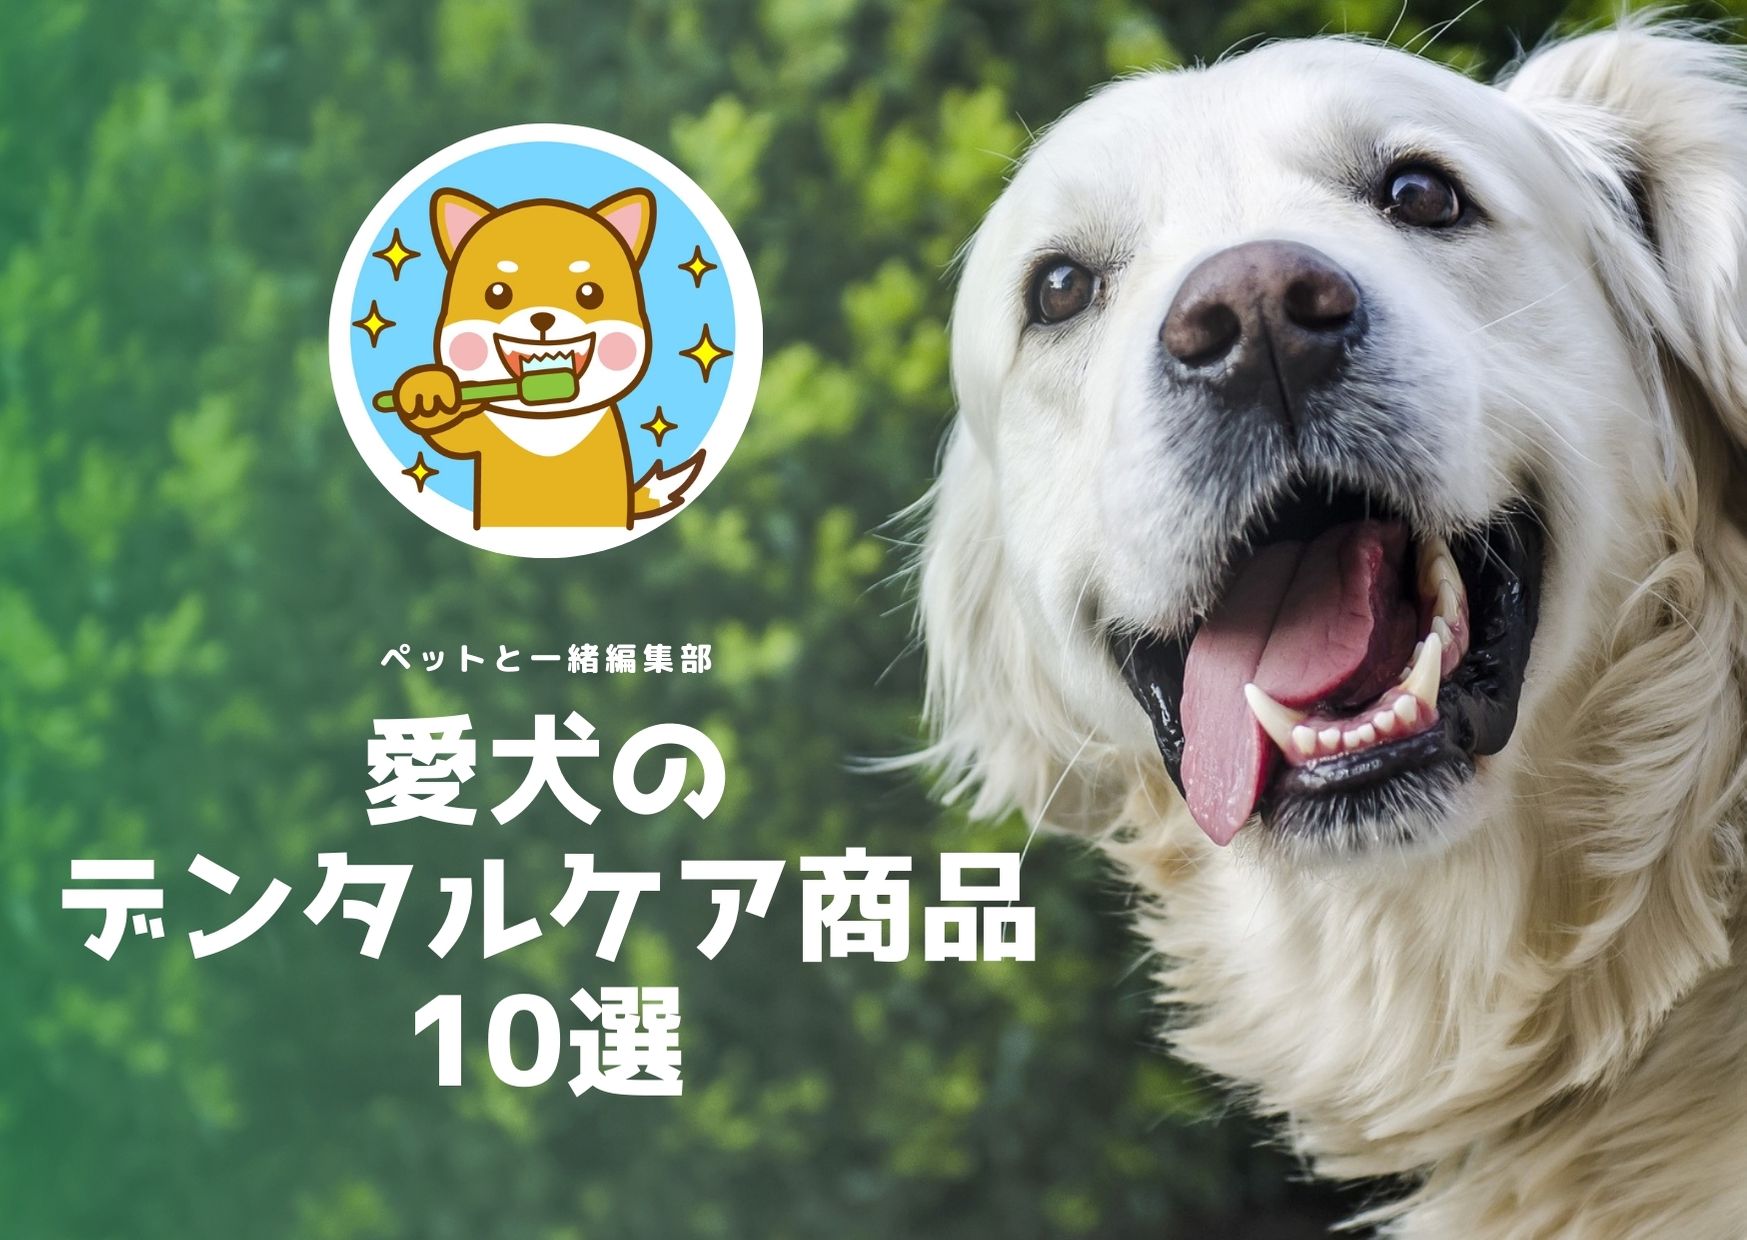 愛犬のデンタルケア商品10選【ペットと一緒編集部】